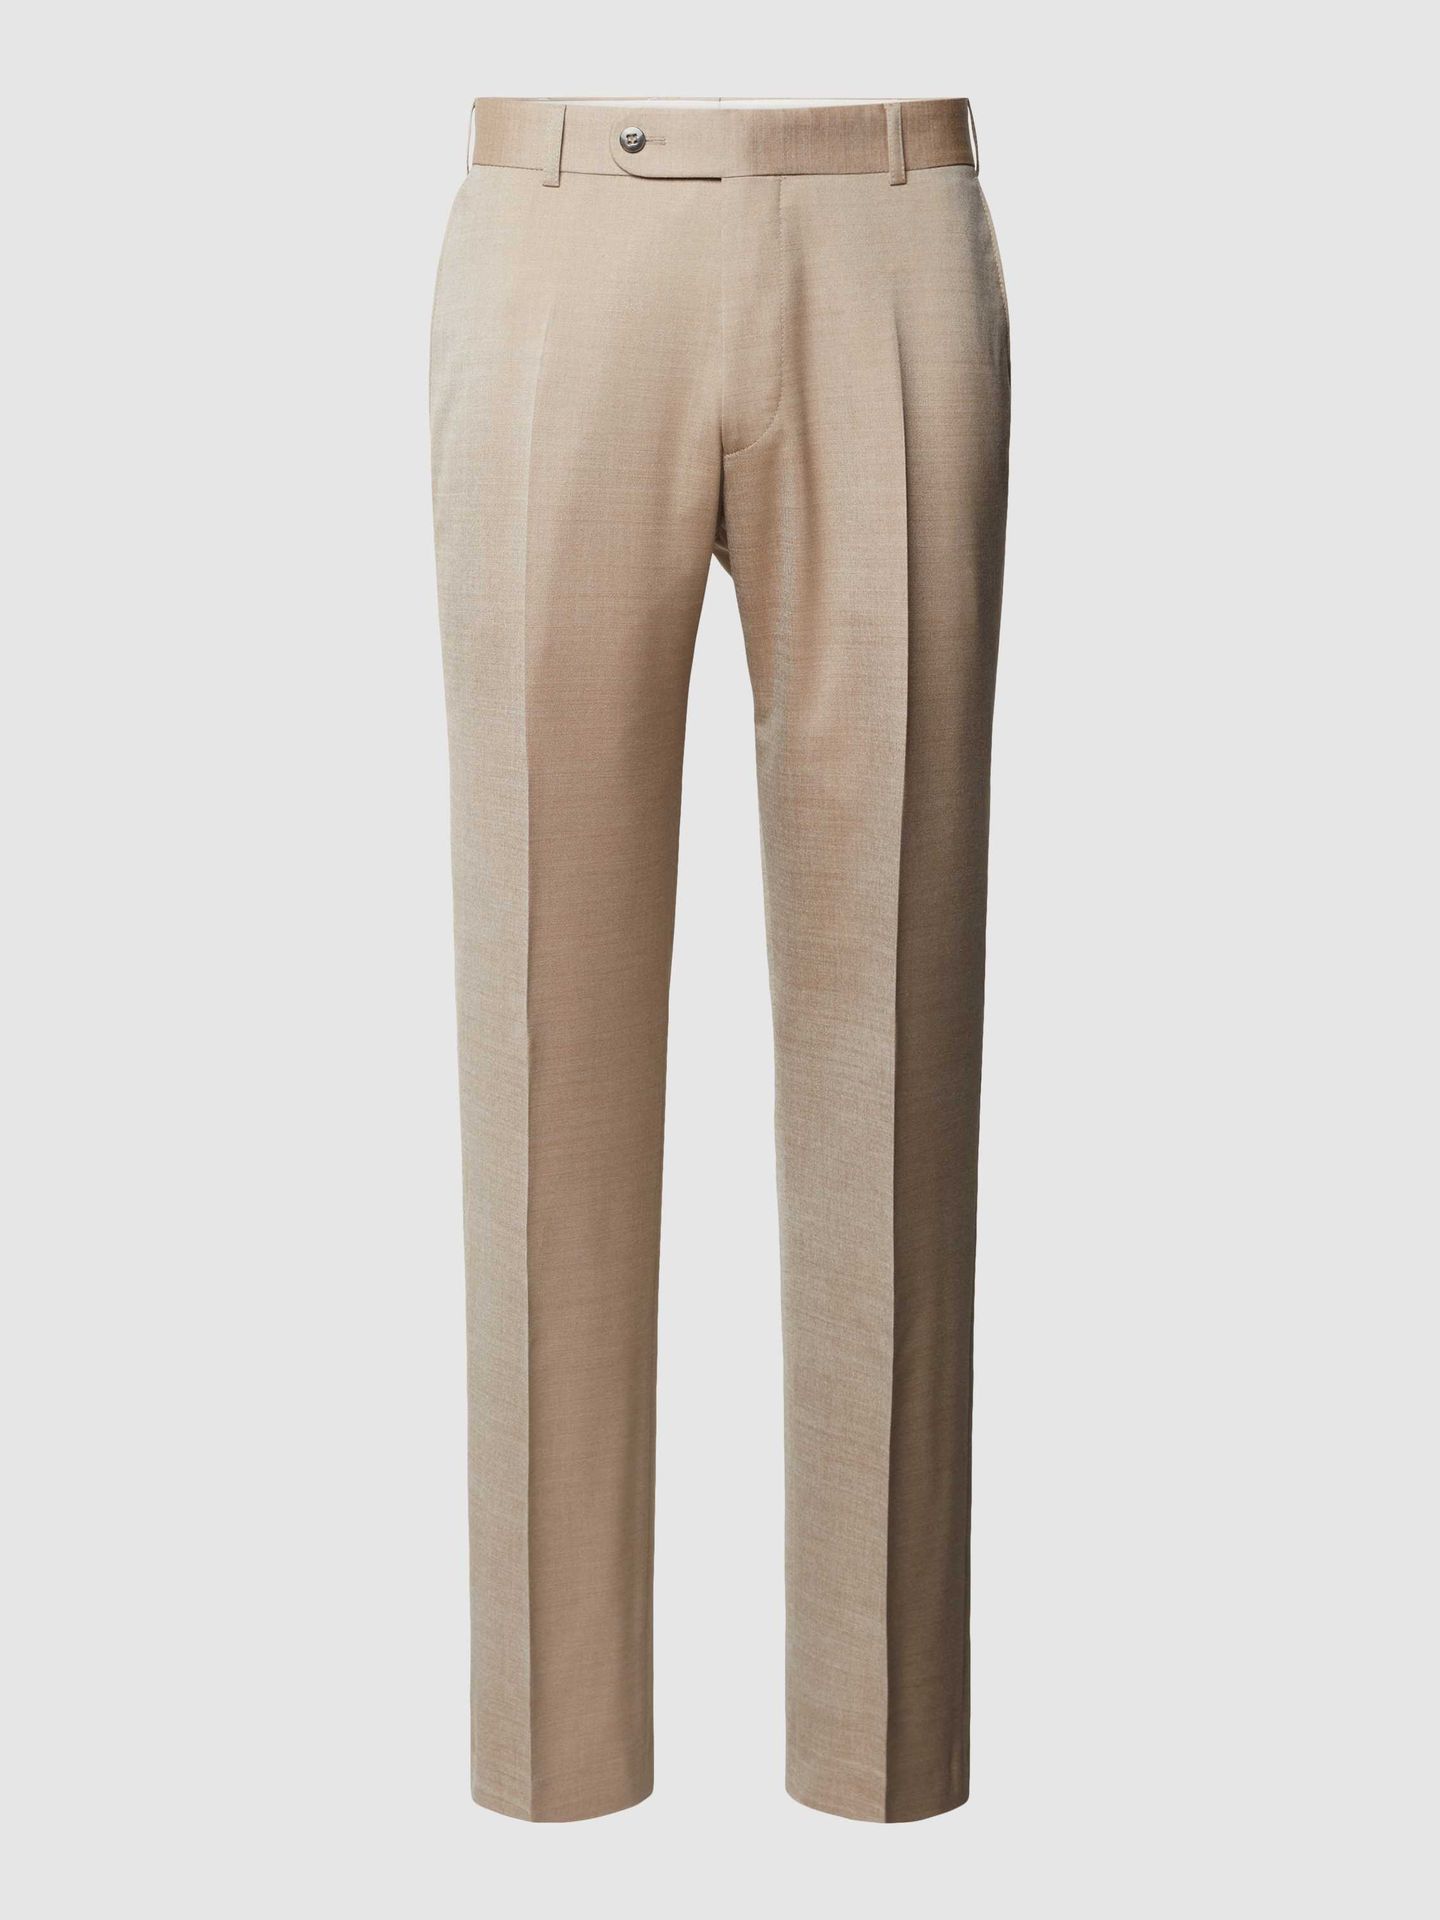 Spodnie do garnituru w jednolitym kolorze z mieszanki wiskozy